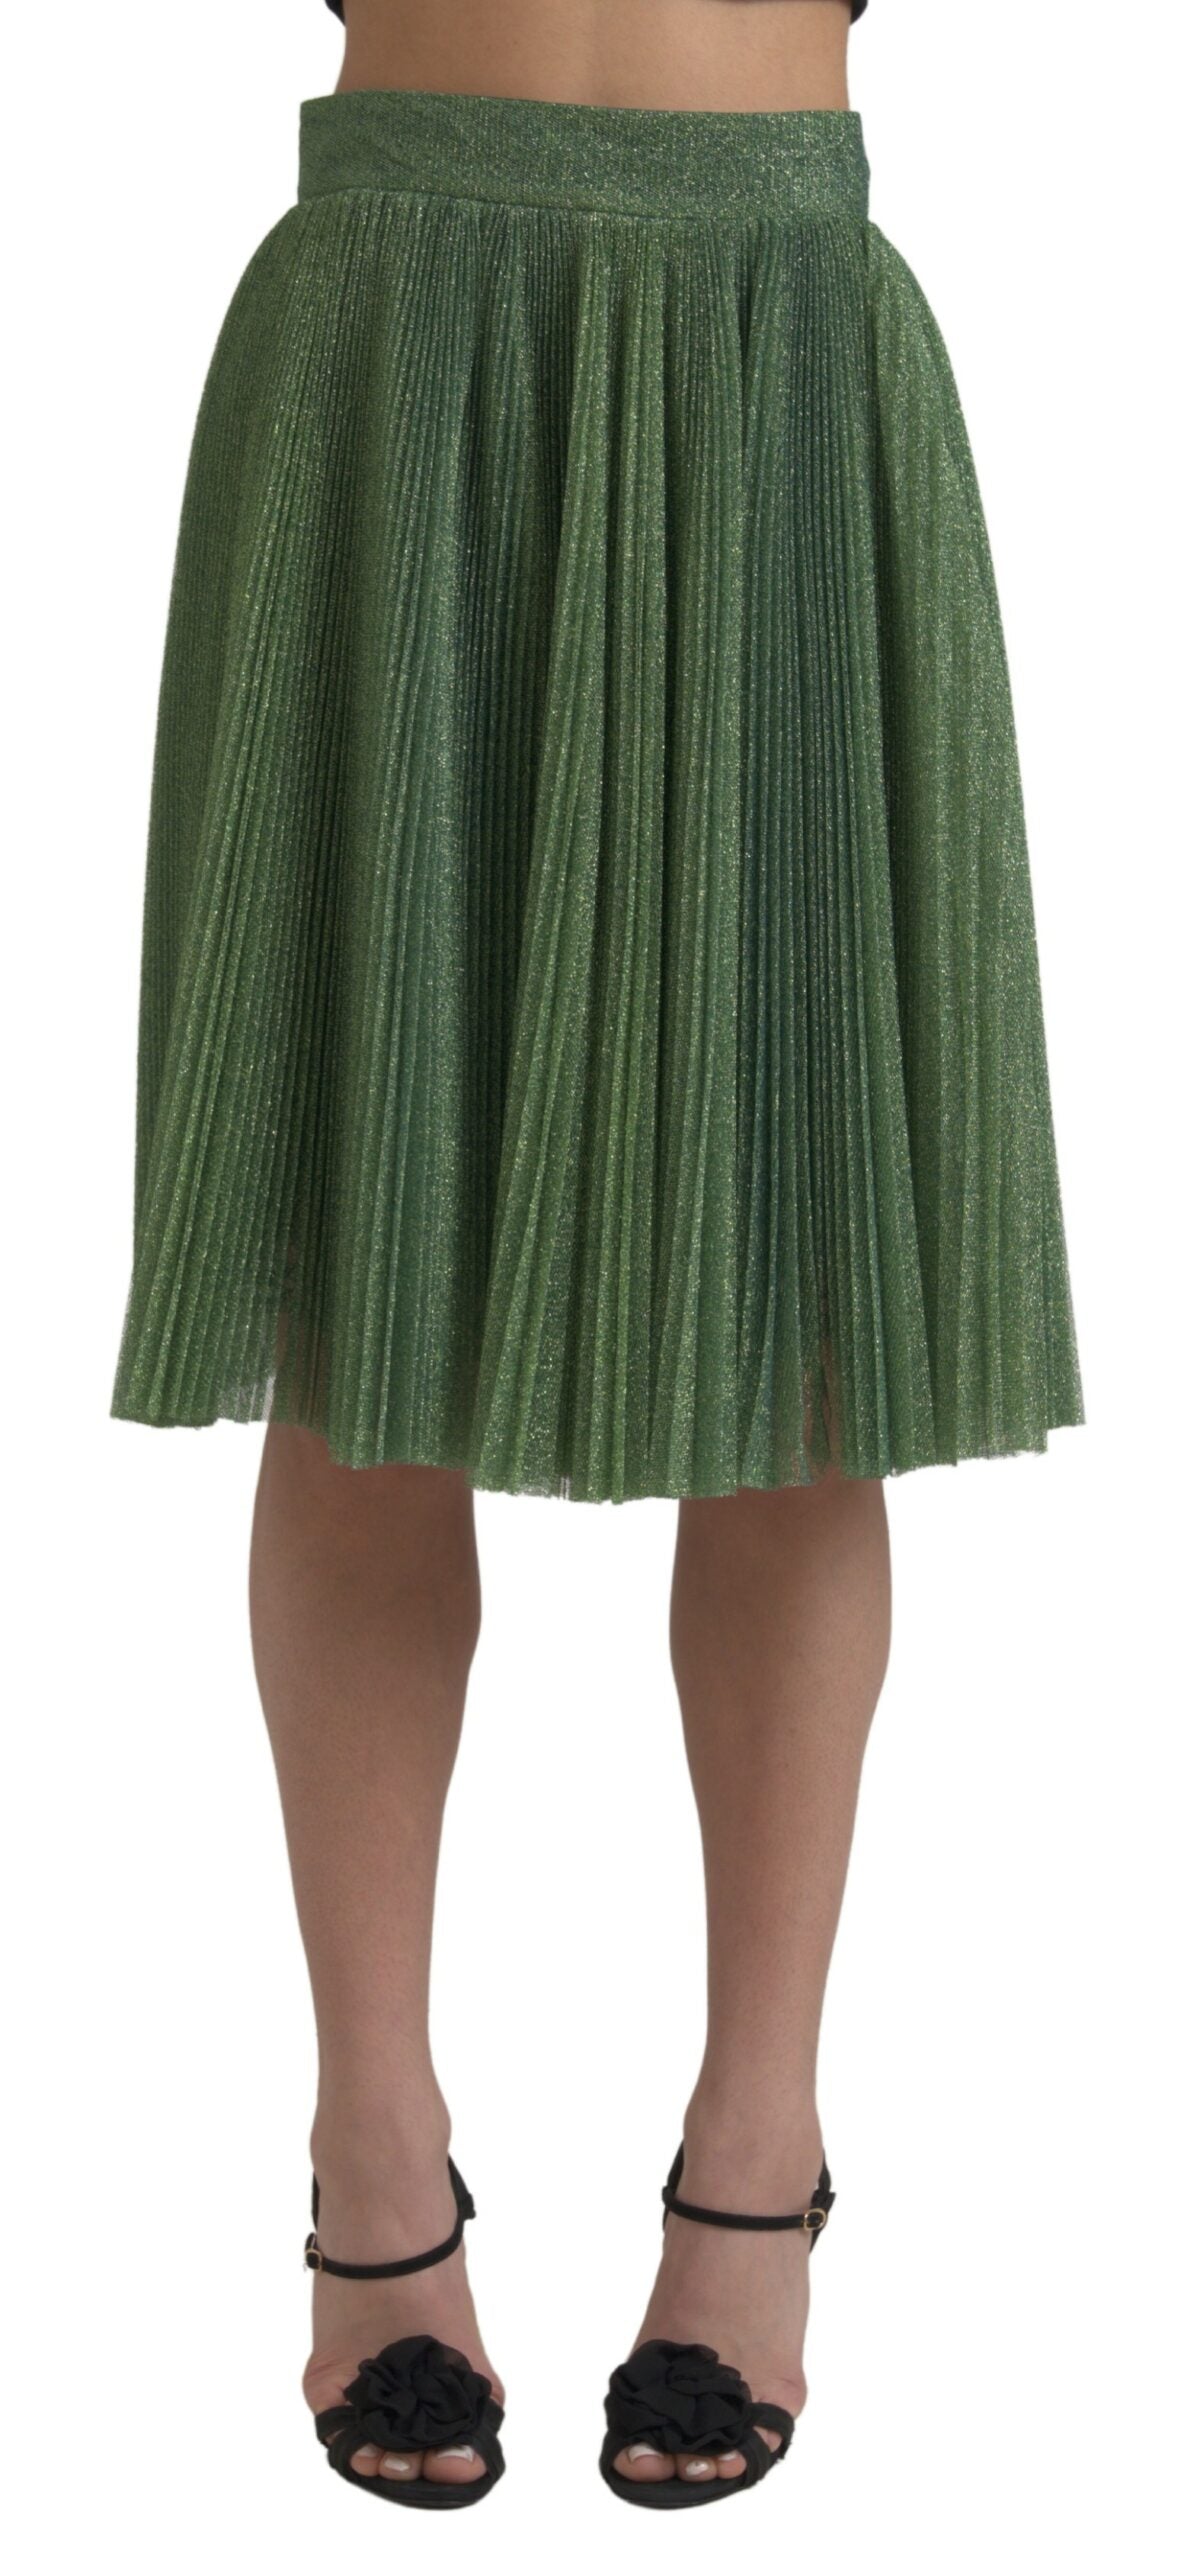 Dolce & gabbana Metallic Green High Waist A-line Pleated Skirt